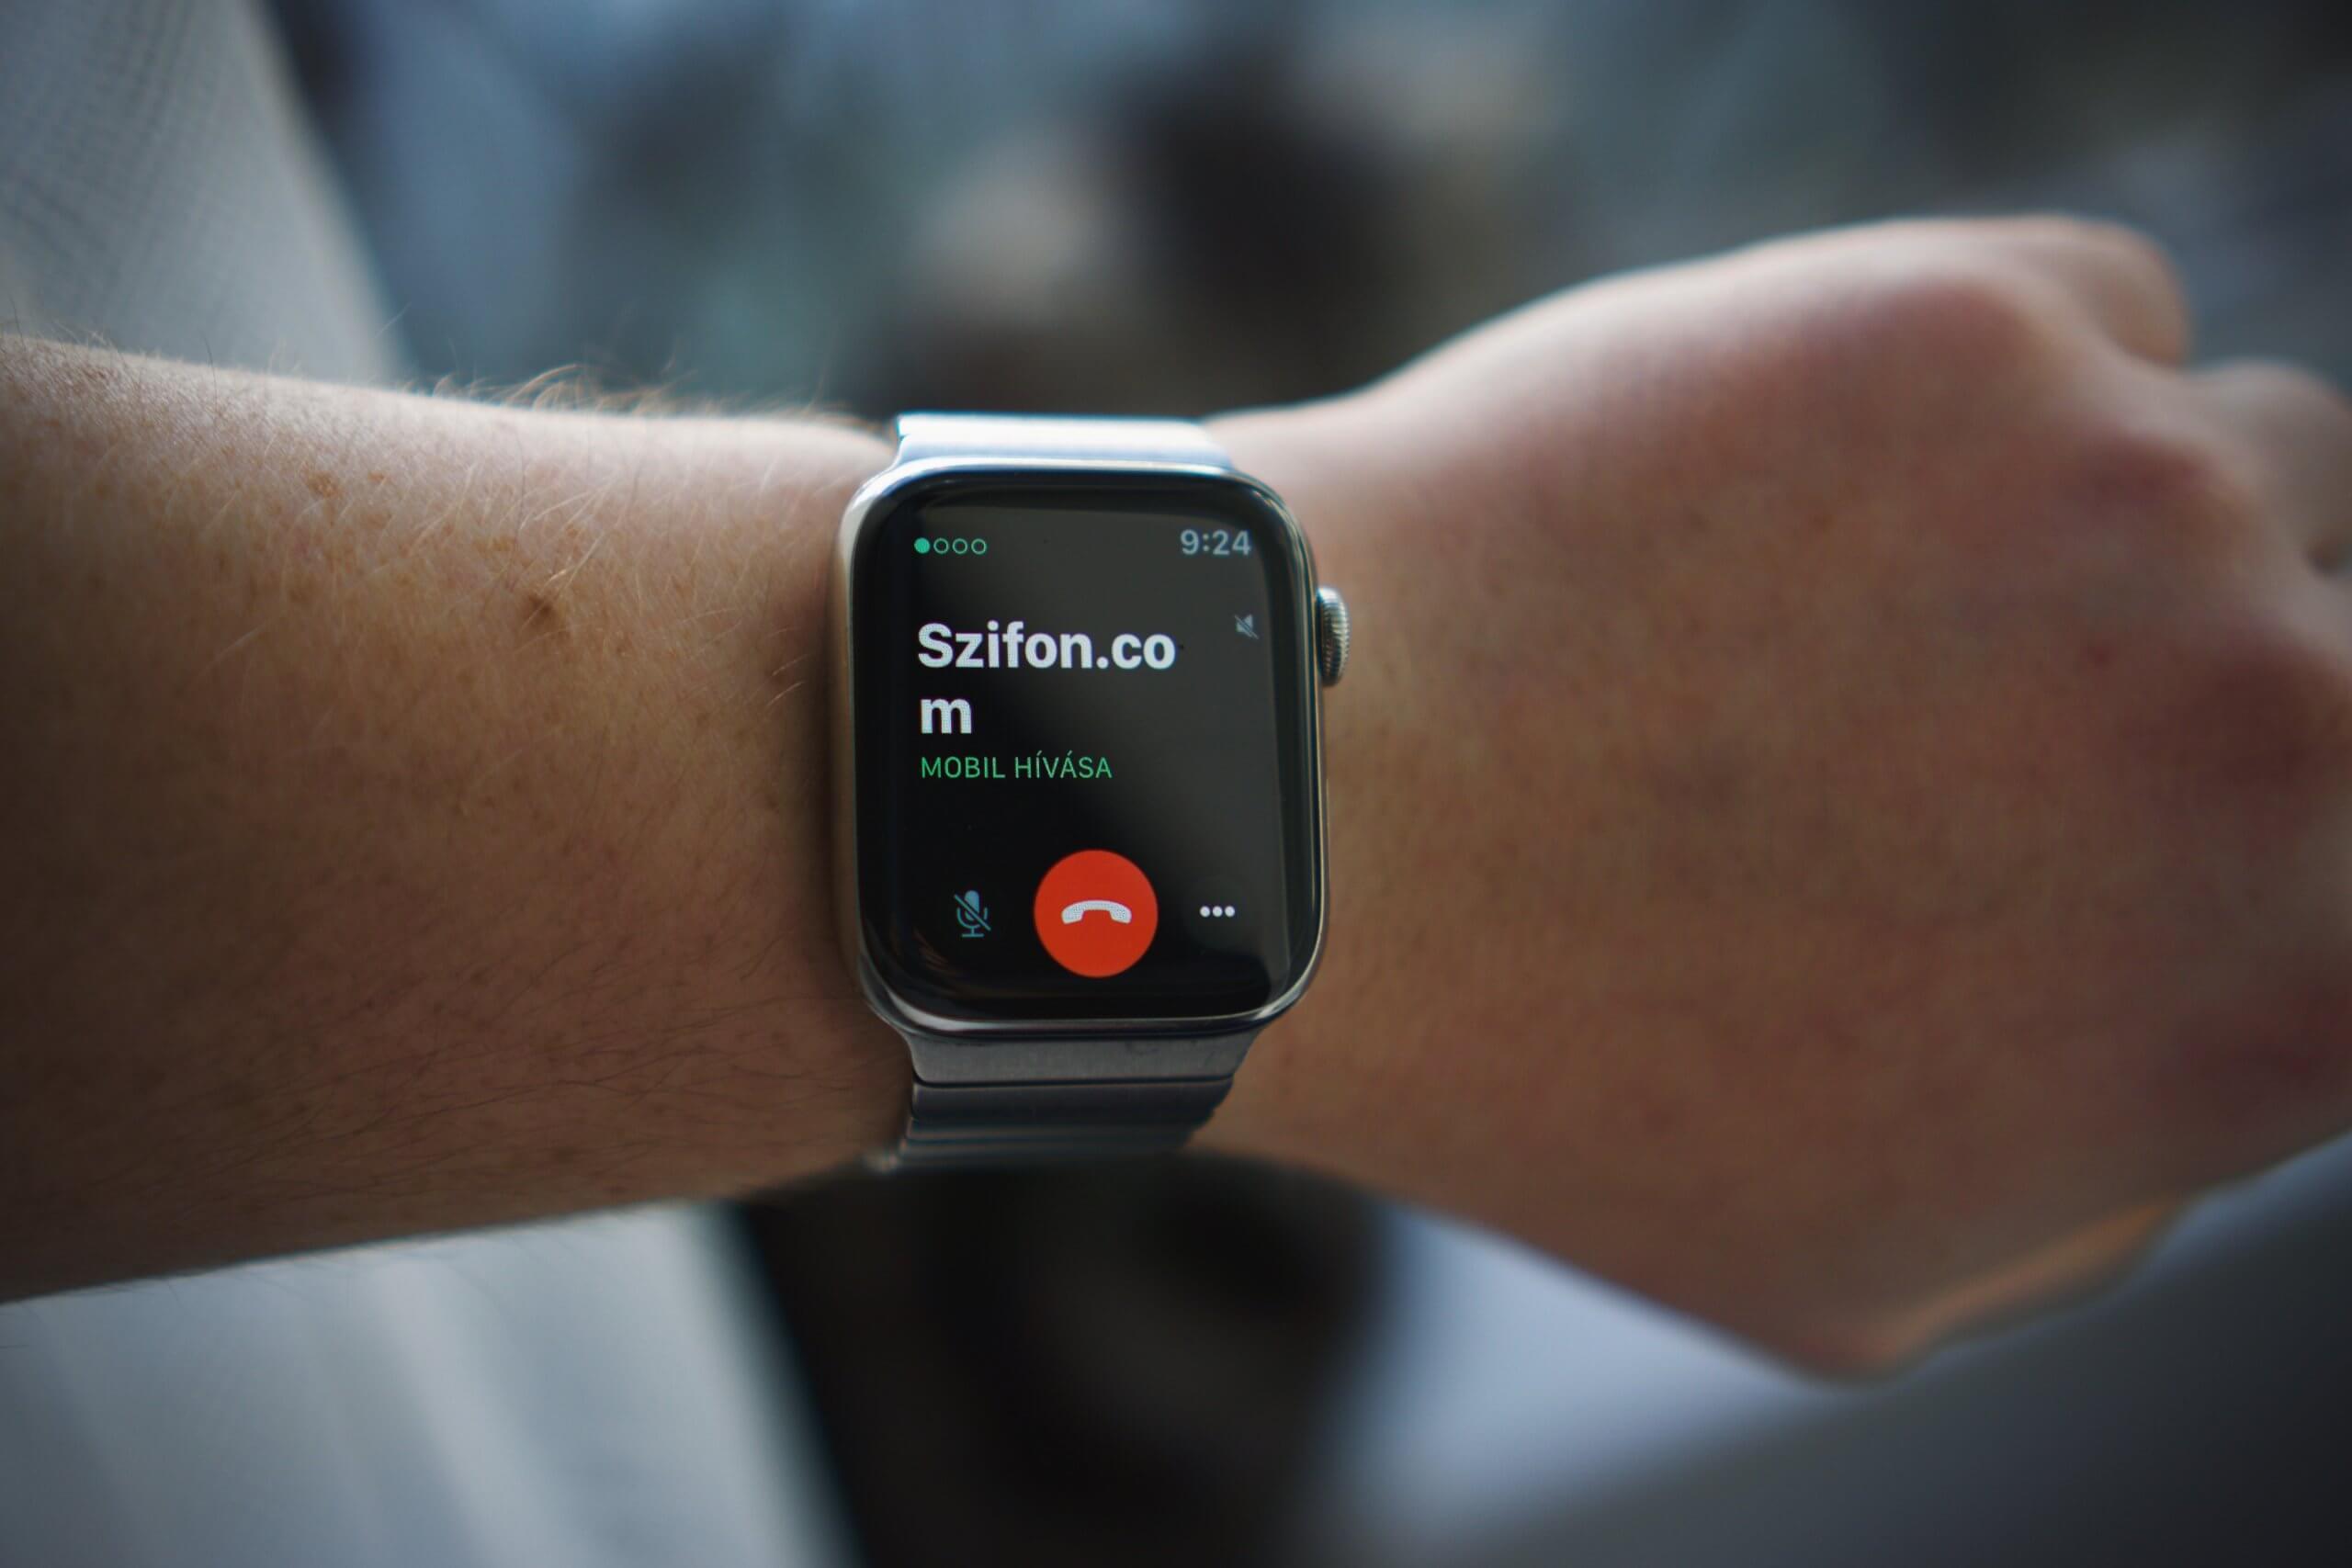 Elérhetővé vált a Telekomnál az Apple Watch LTE támogatás!⌚️– aktiválás